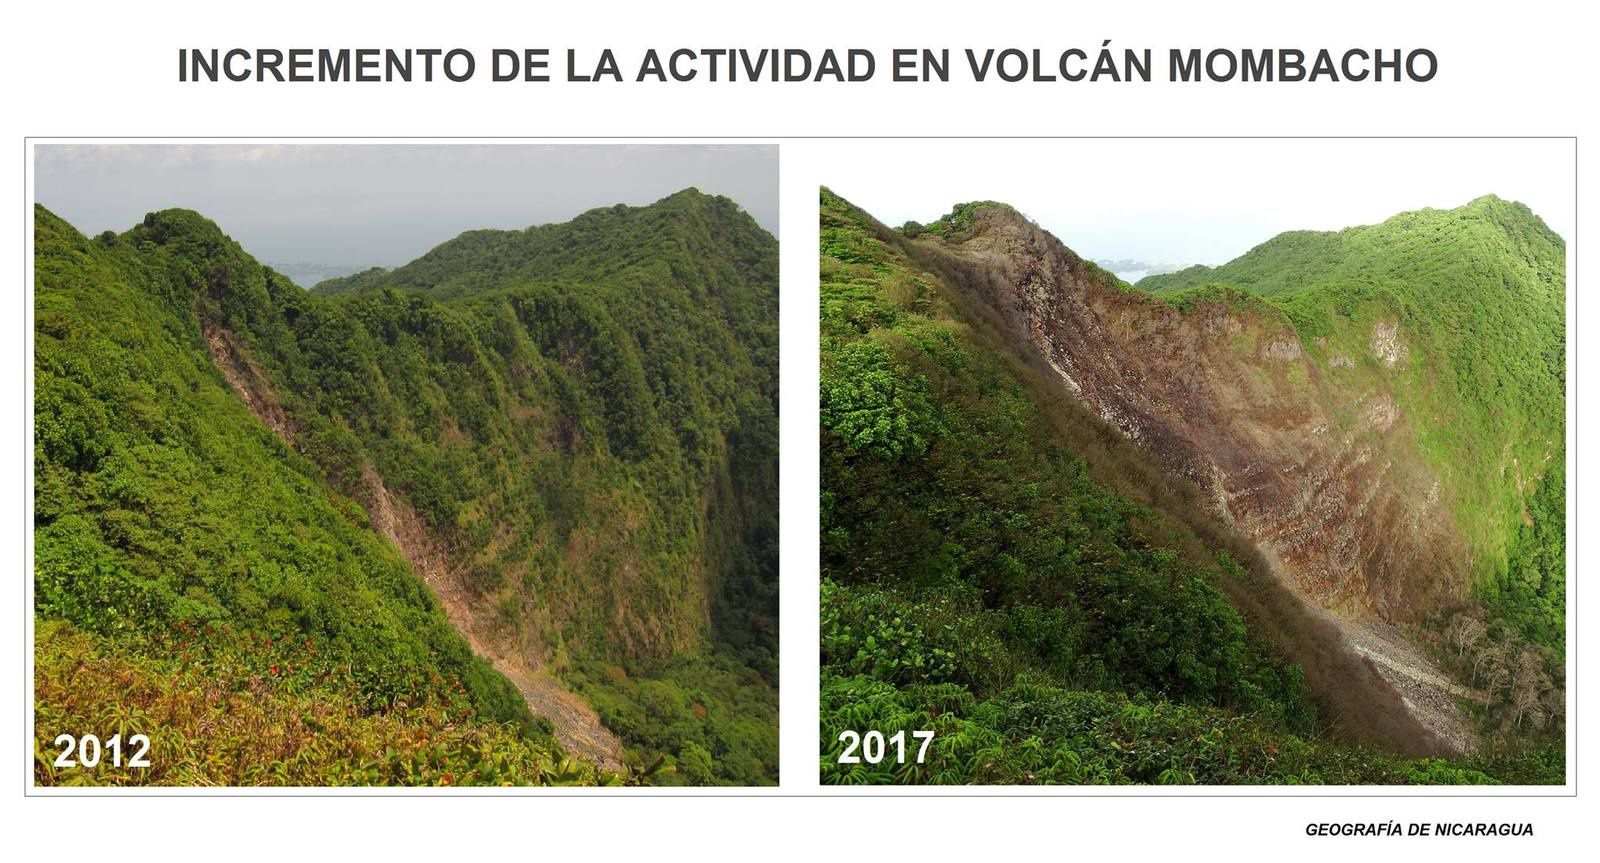  Mombacho - évolution de la végétation entre 2012 et 2017 - photos Geografia de Nicaragua